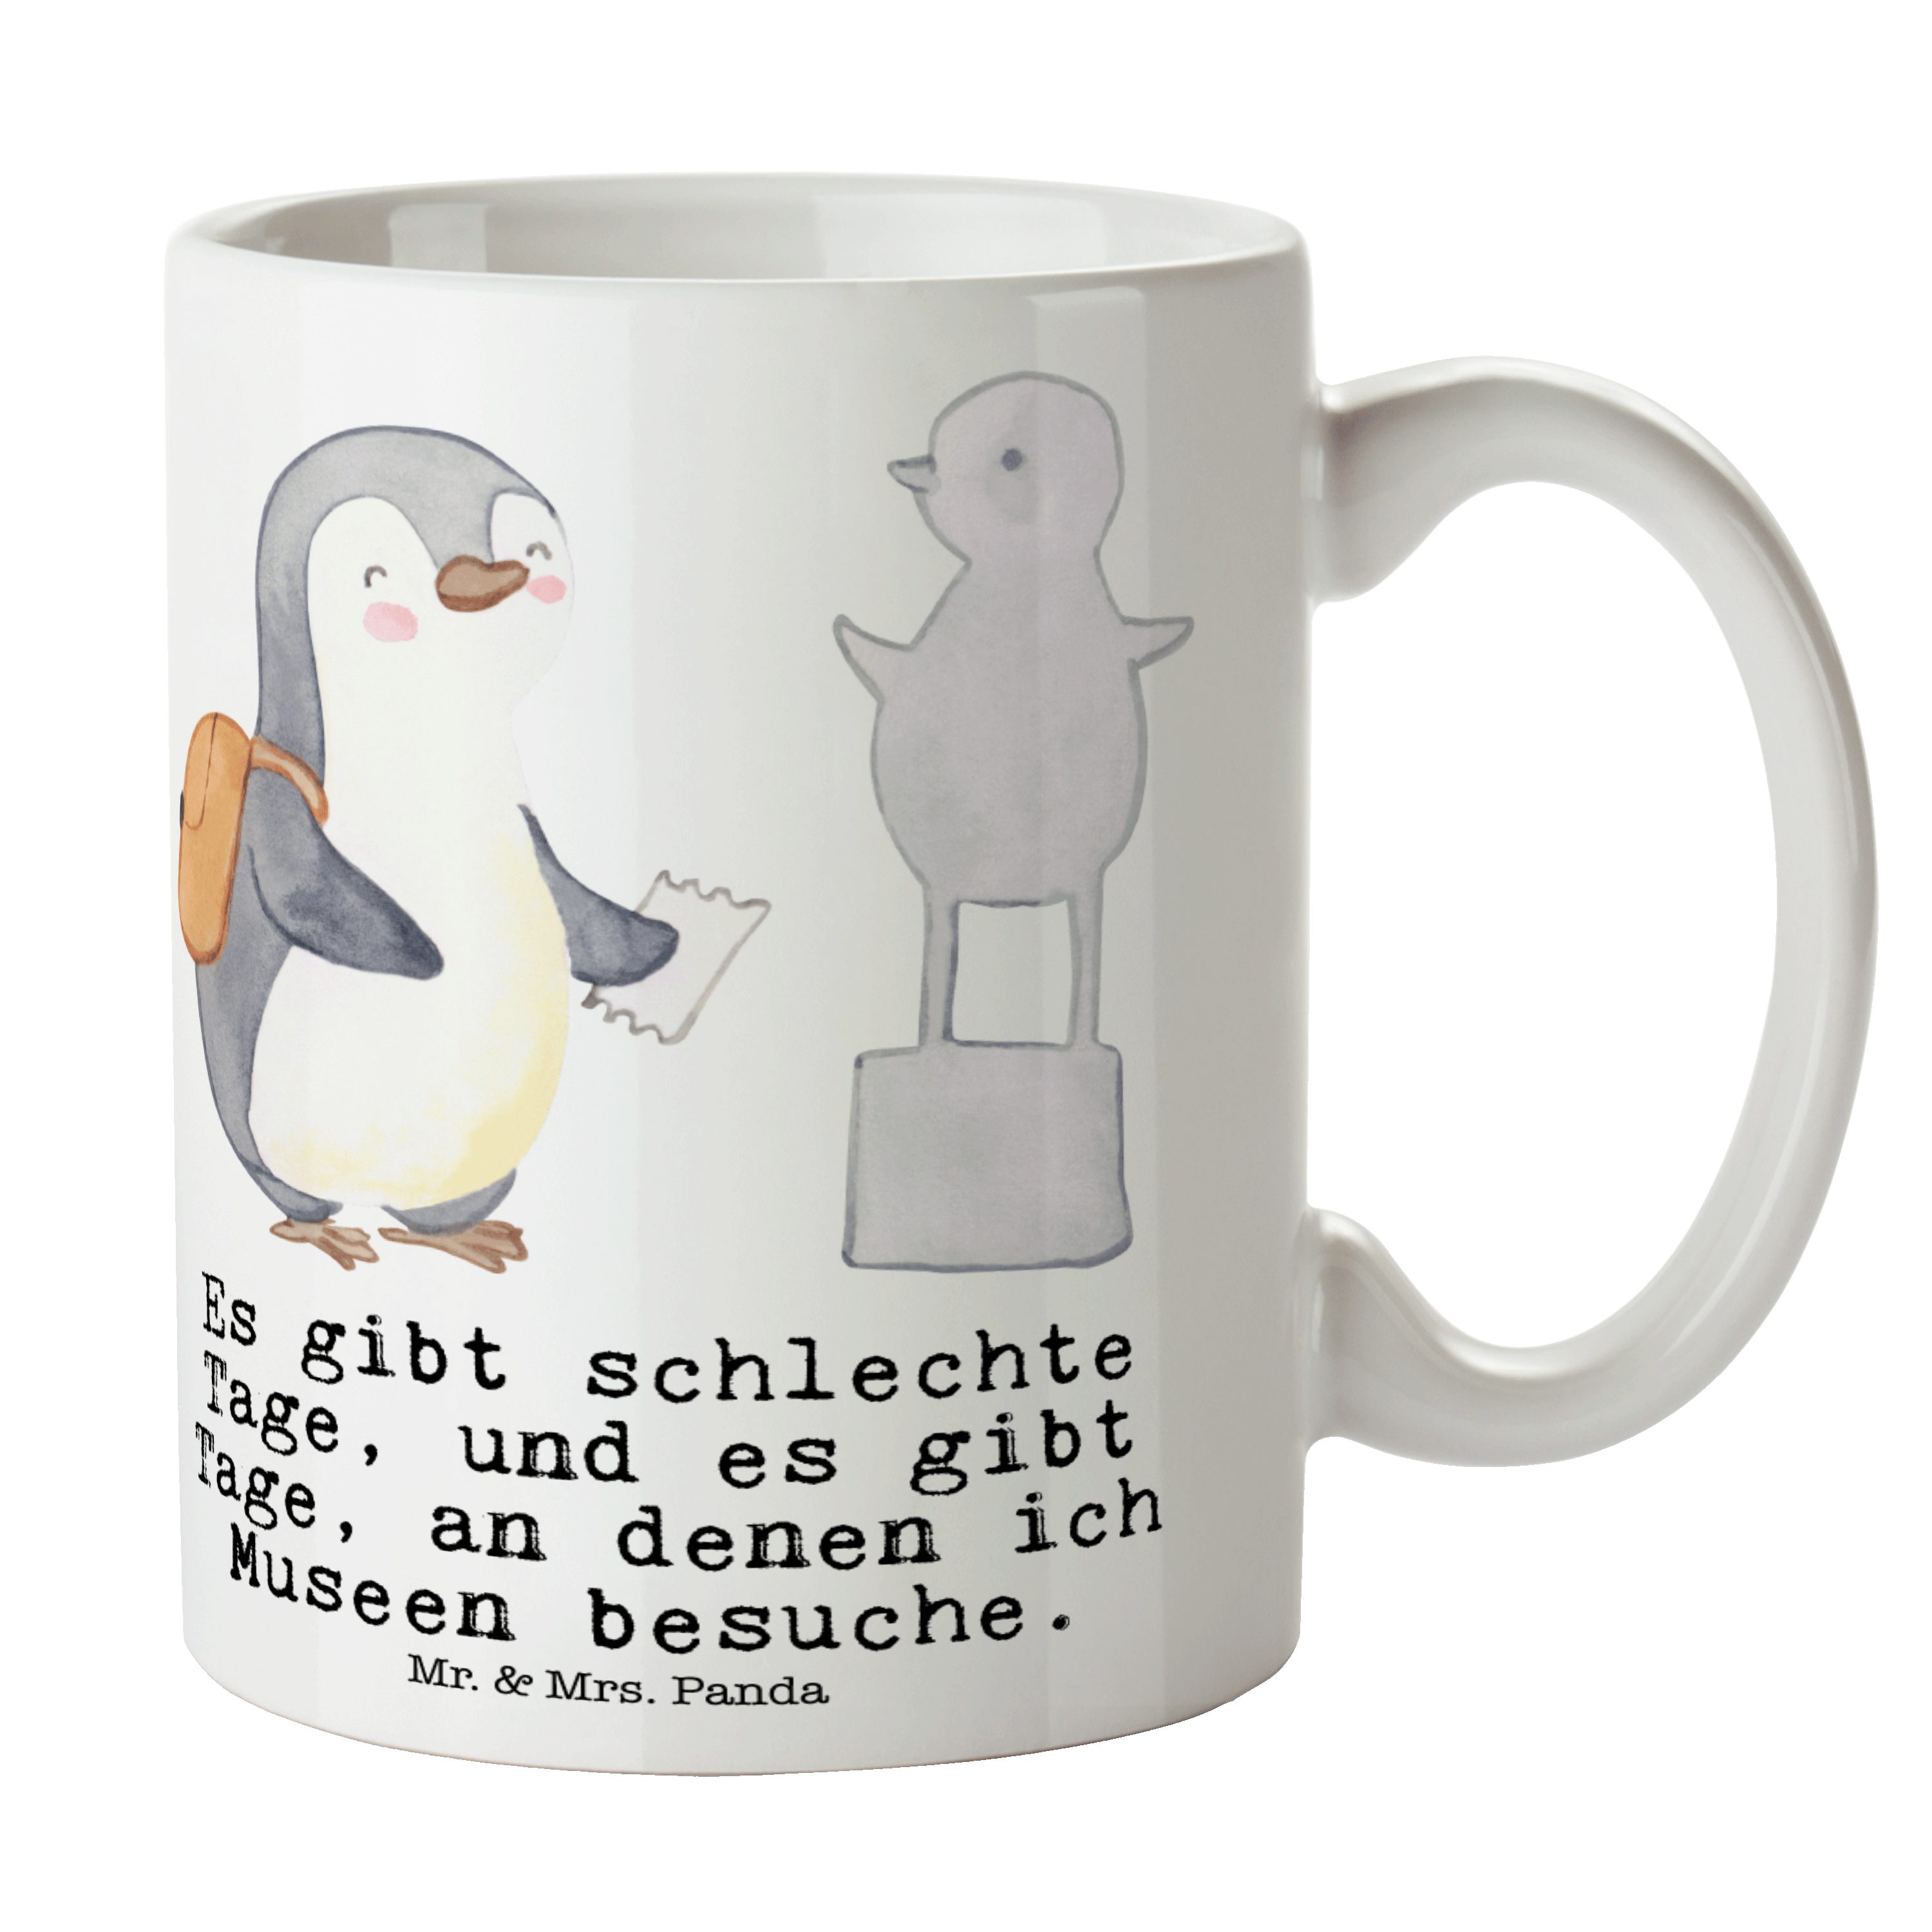 Mr. & Mrs. Panda Tasse Pinguin Museum besuchen Tage - Weiß - Geschenk, Porzellantasse, Danke, Keramik